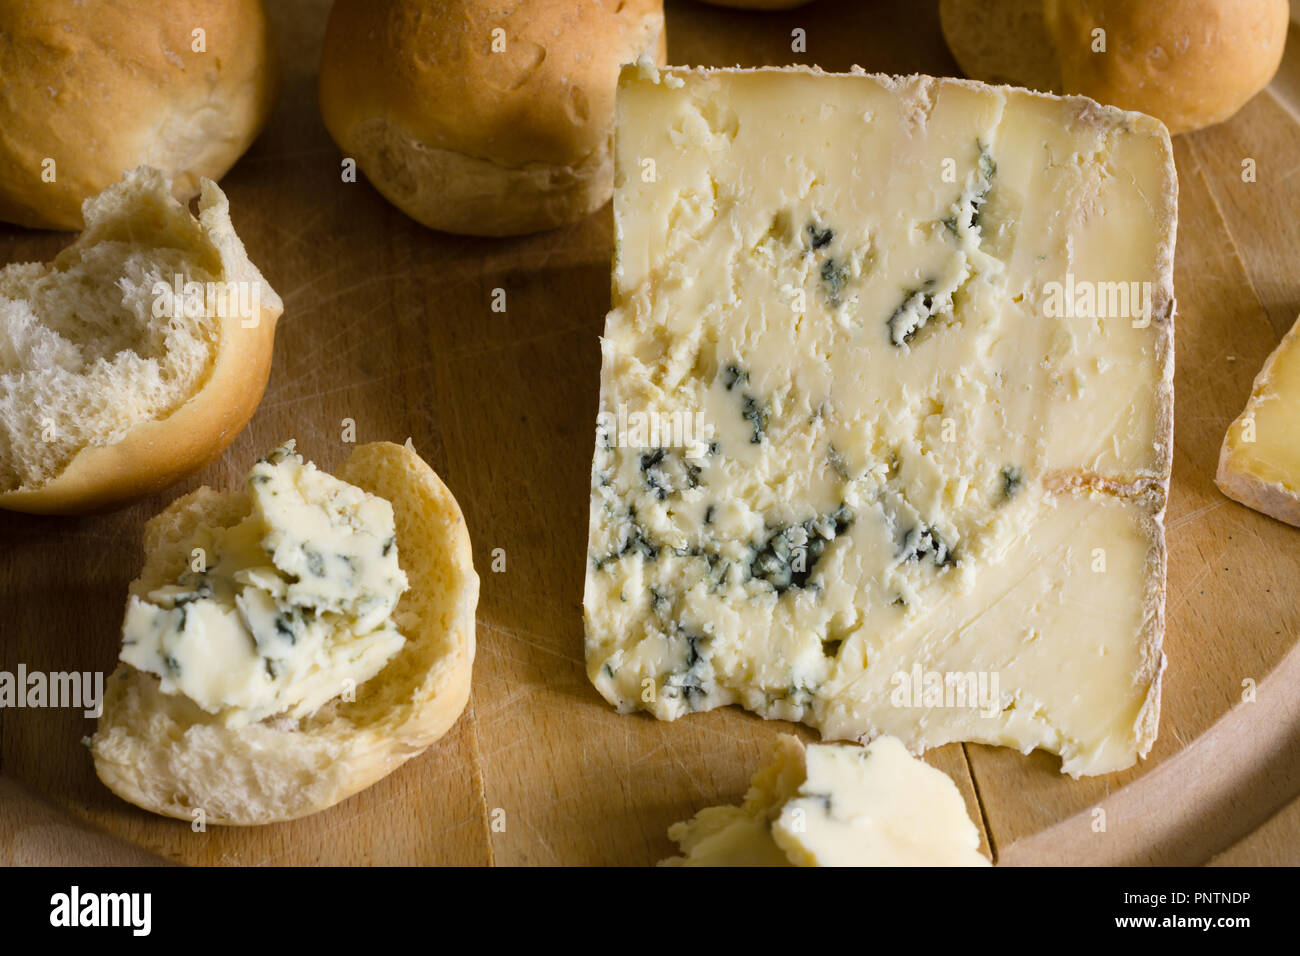 Blue Vinny un tradizionale formaggio prodotto in Sturminster Newton nel Dorset in Inghilterra, da non pastorizzato di latte scremato. Servita con manopole di Dorset Foto Stock